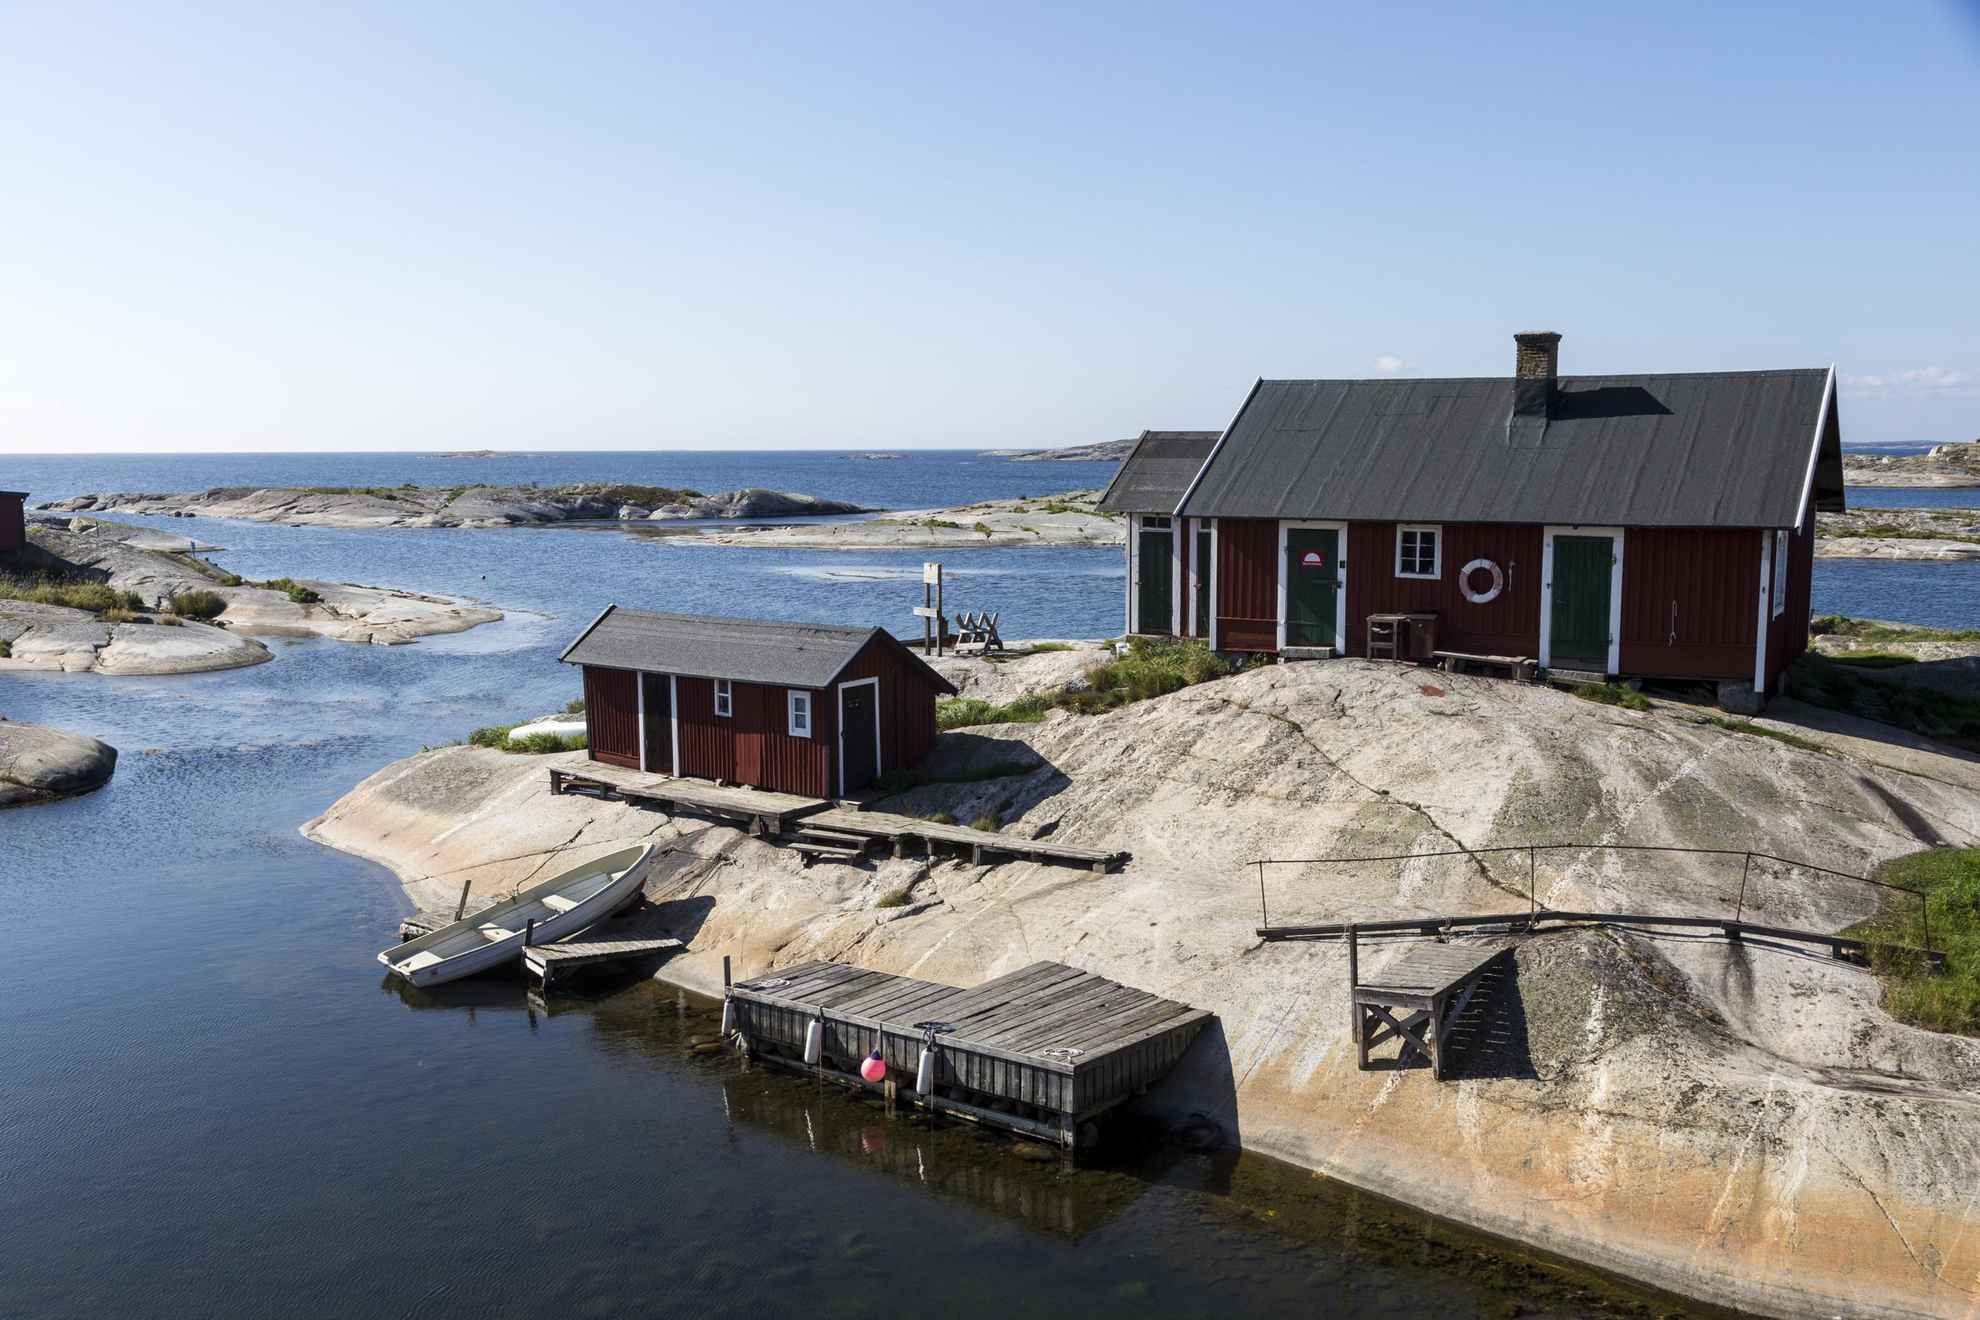 Une maison et un hangar à bateaux avec un ponton en bois se trouvent sur les rochers de l'archipel de Stockholm. Une barque vide est posée sur les rochers et flotte en partie dans l'eau.